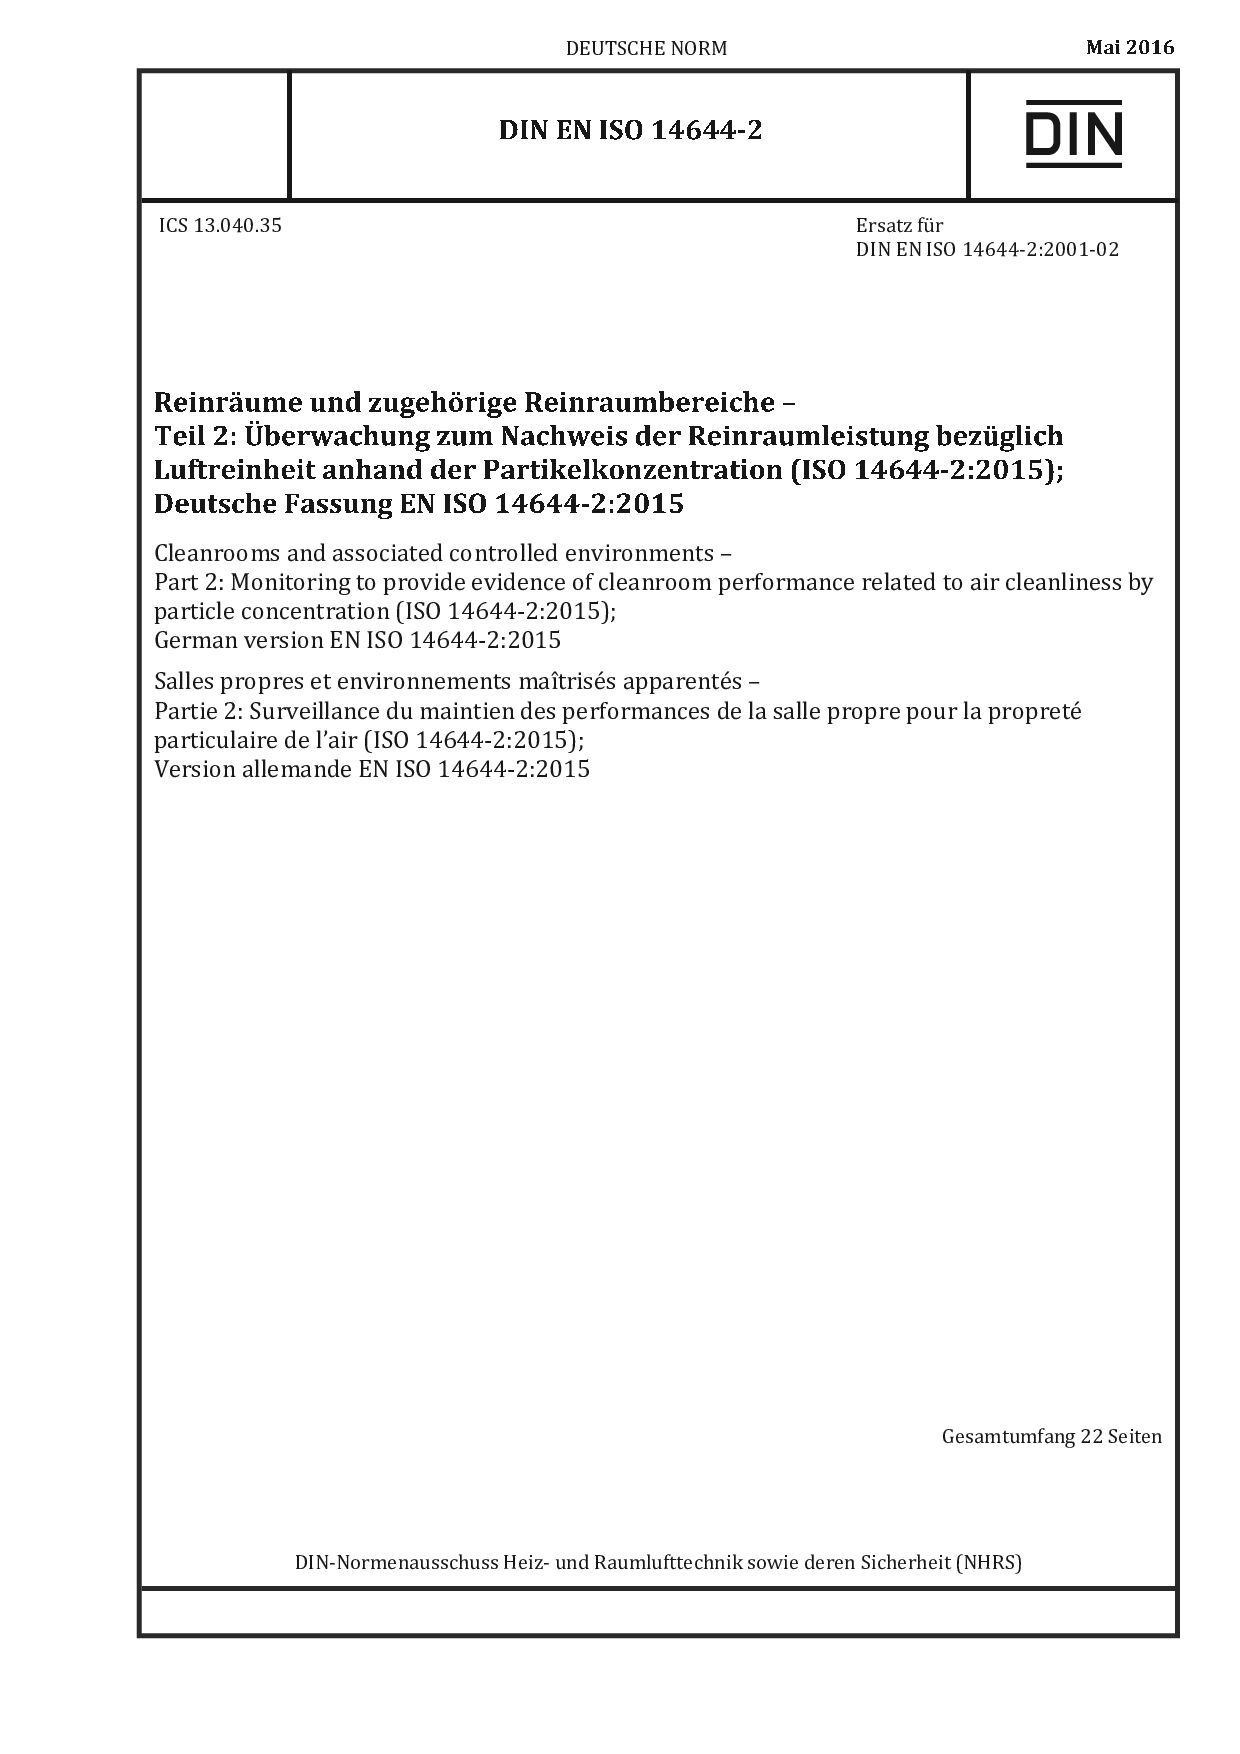 DIN EN ISO 14644-2:2016-05